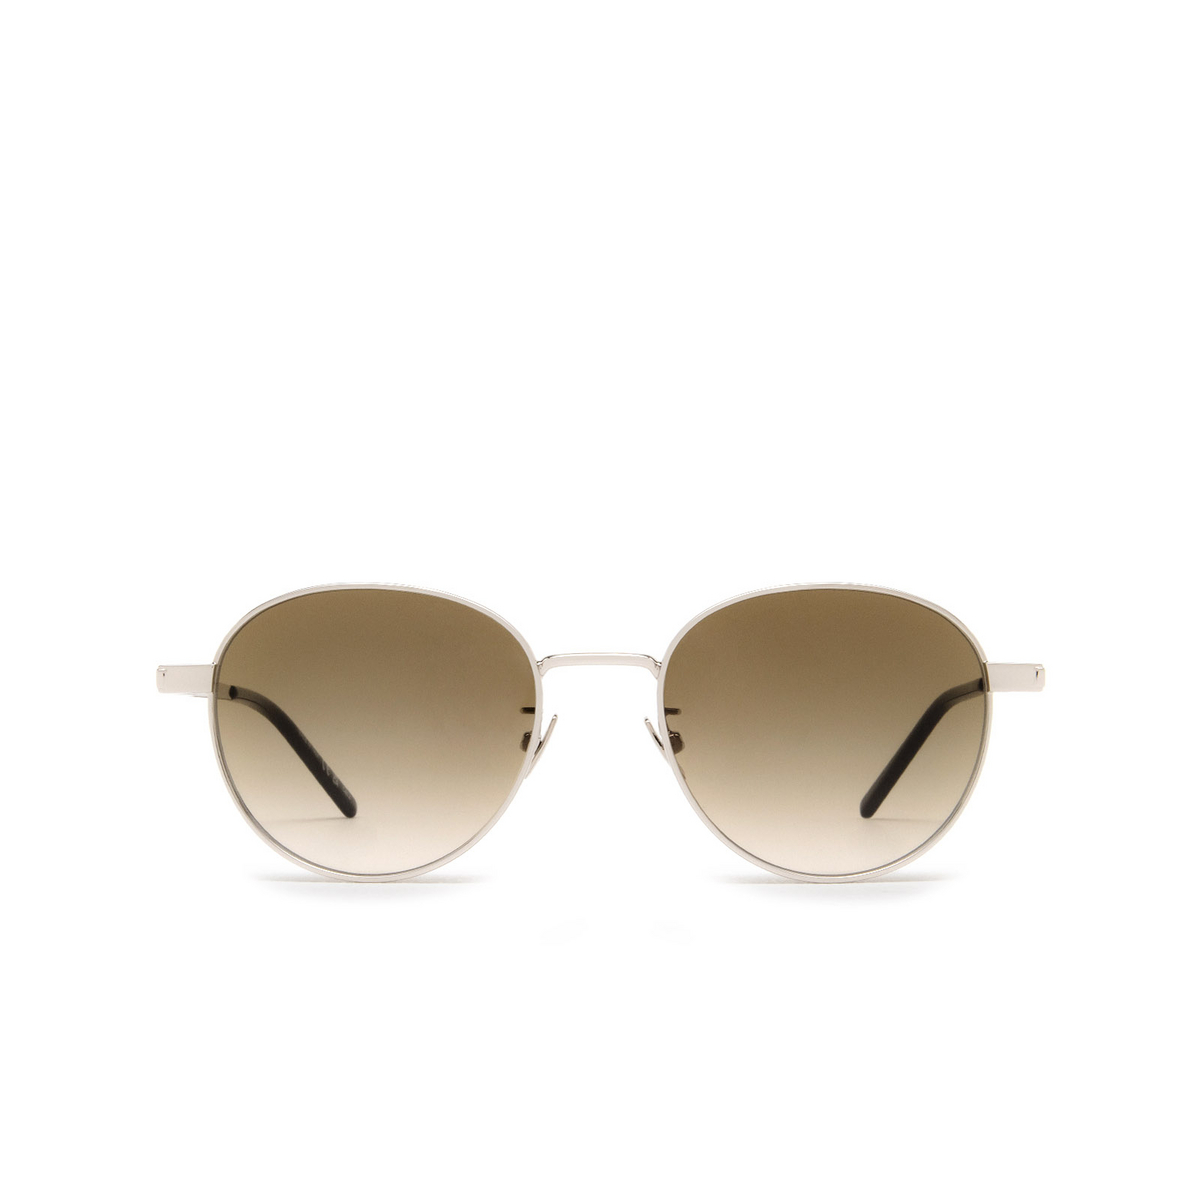 Saint Laurent® Round Sunglasses: SL 533 color Silver 014 - front view.